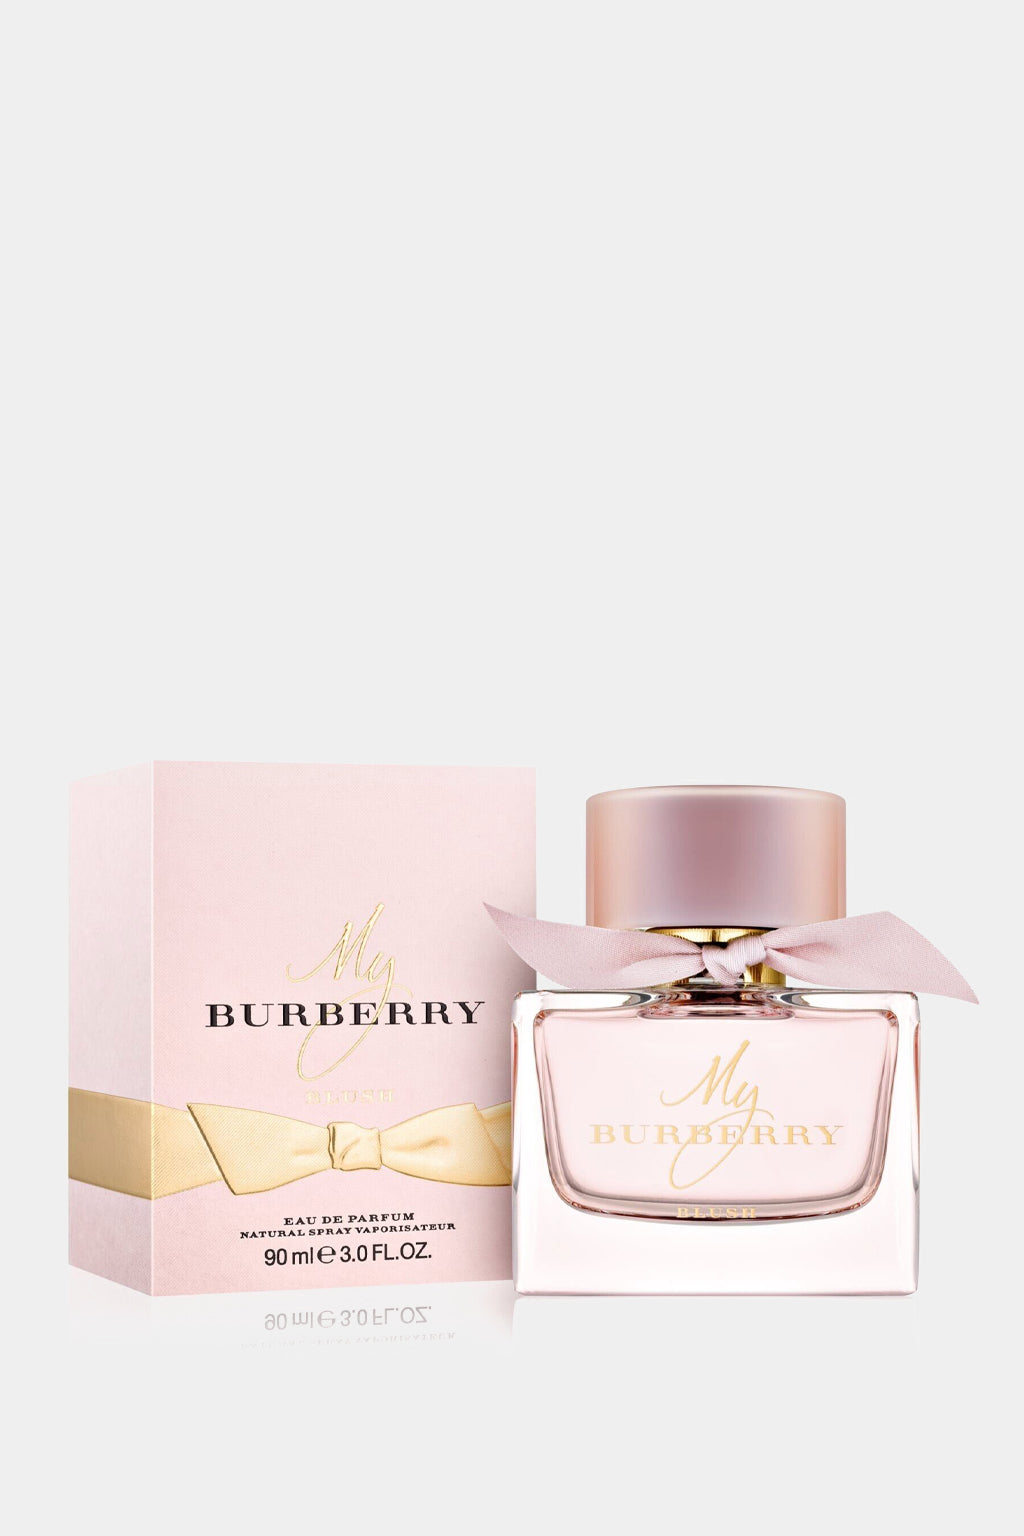 Burberry - My Burberry Blush Eau de Parfum